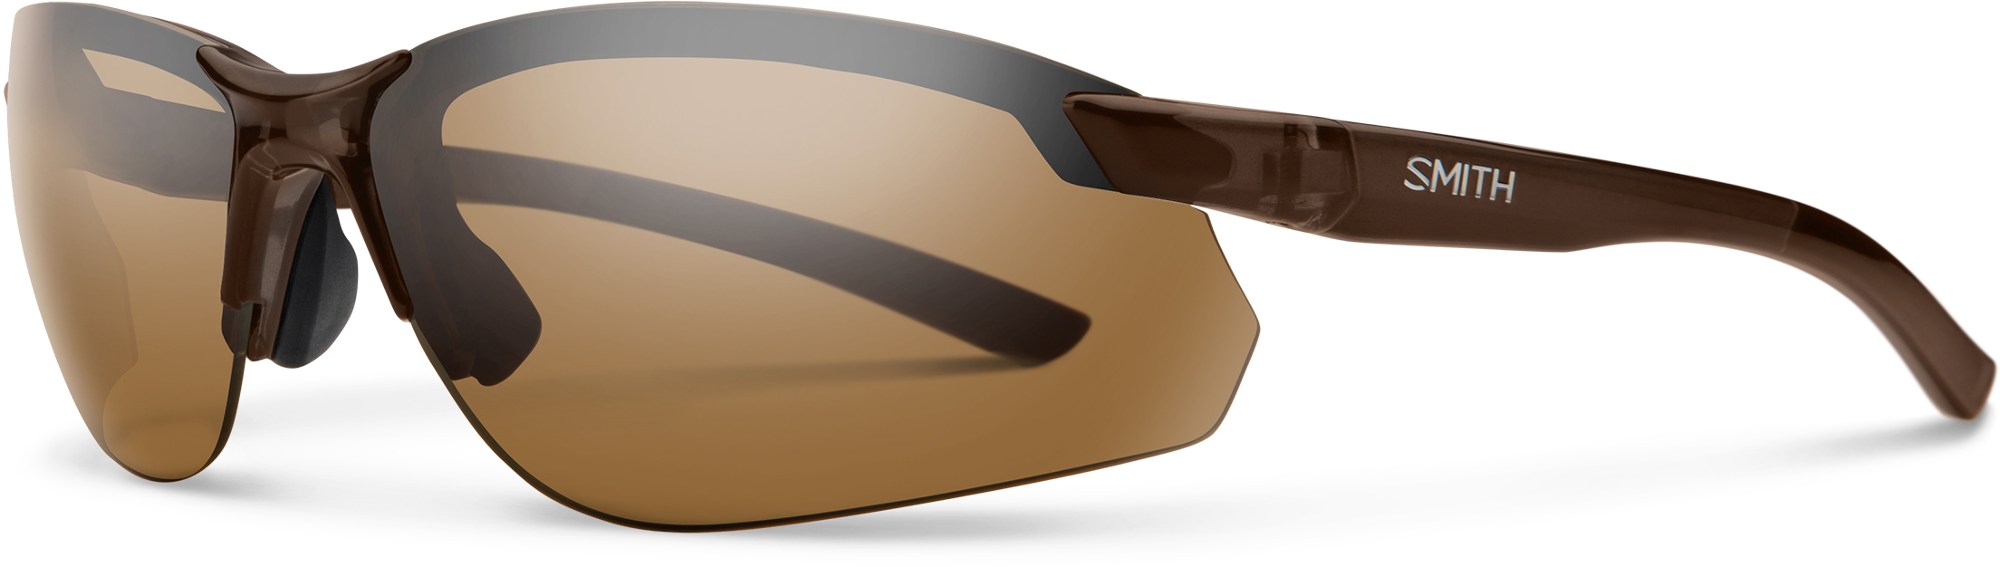 Поляризованные солнцезащитные очки Parallel 2 Max Smith, коричневый altera parallel port simulator pl byteblaster2 0b parallel port download line burner